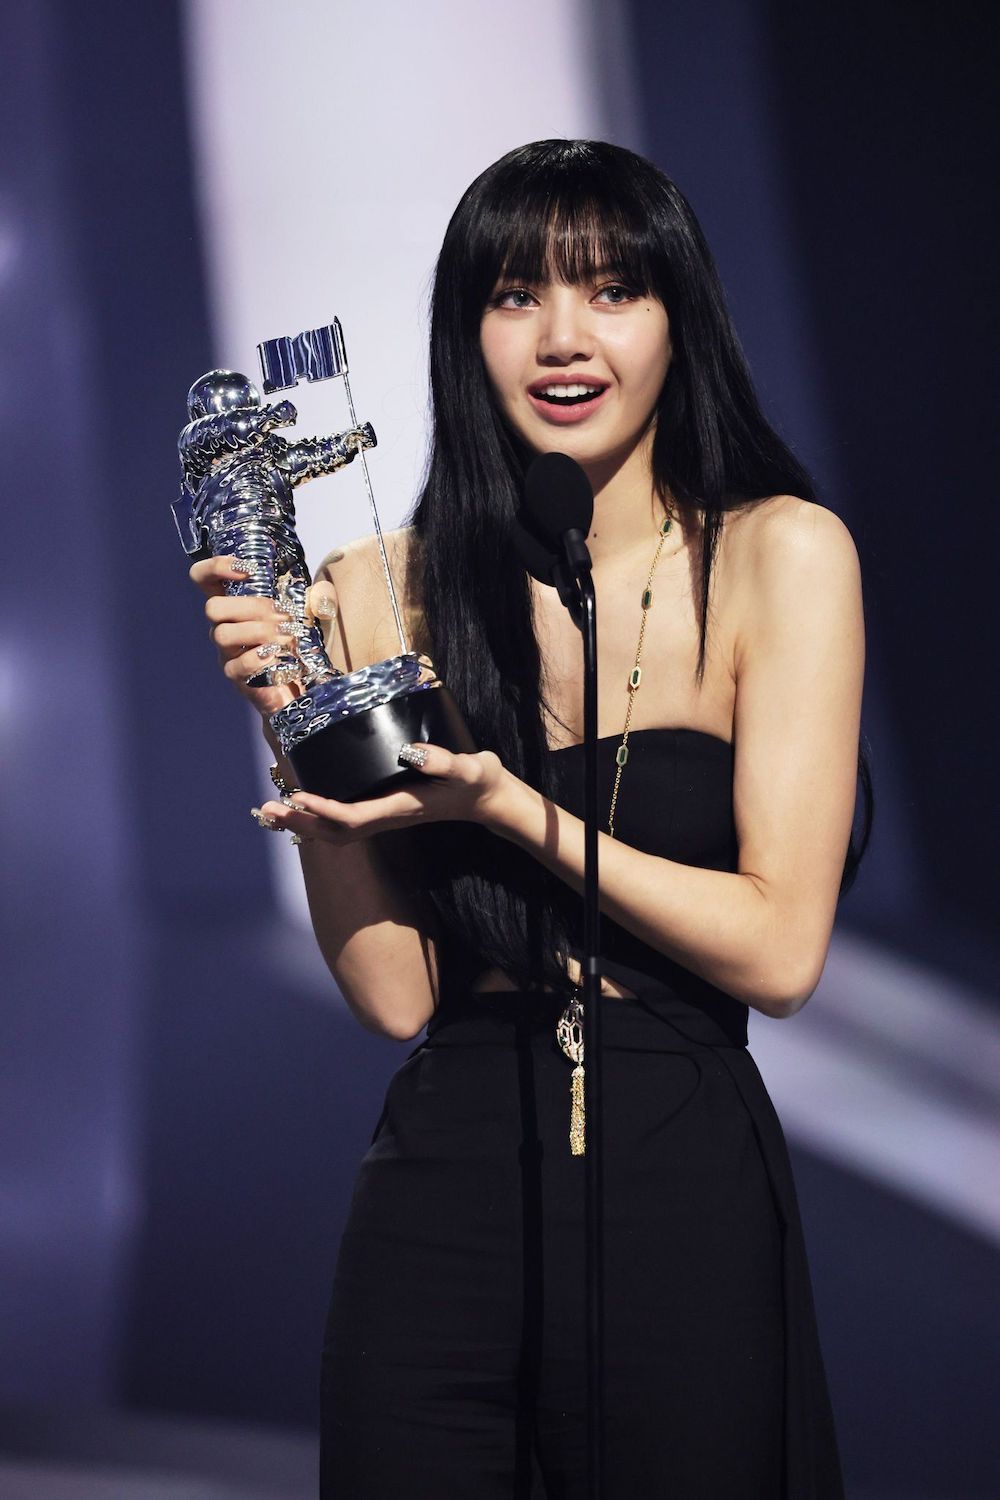 Blackpink's Lisa Wins ‘Best K-Pop’ Award at 2022 MTV VMAs